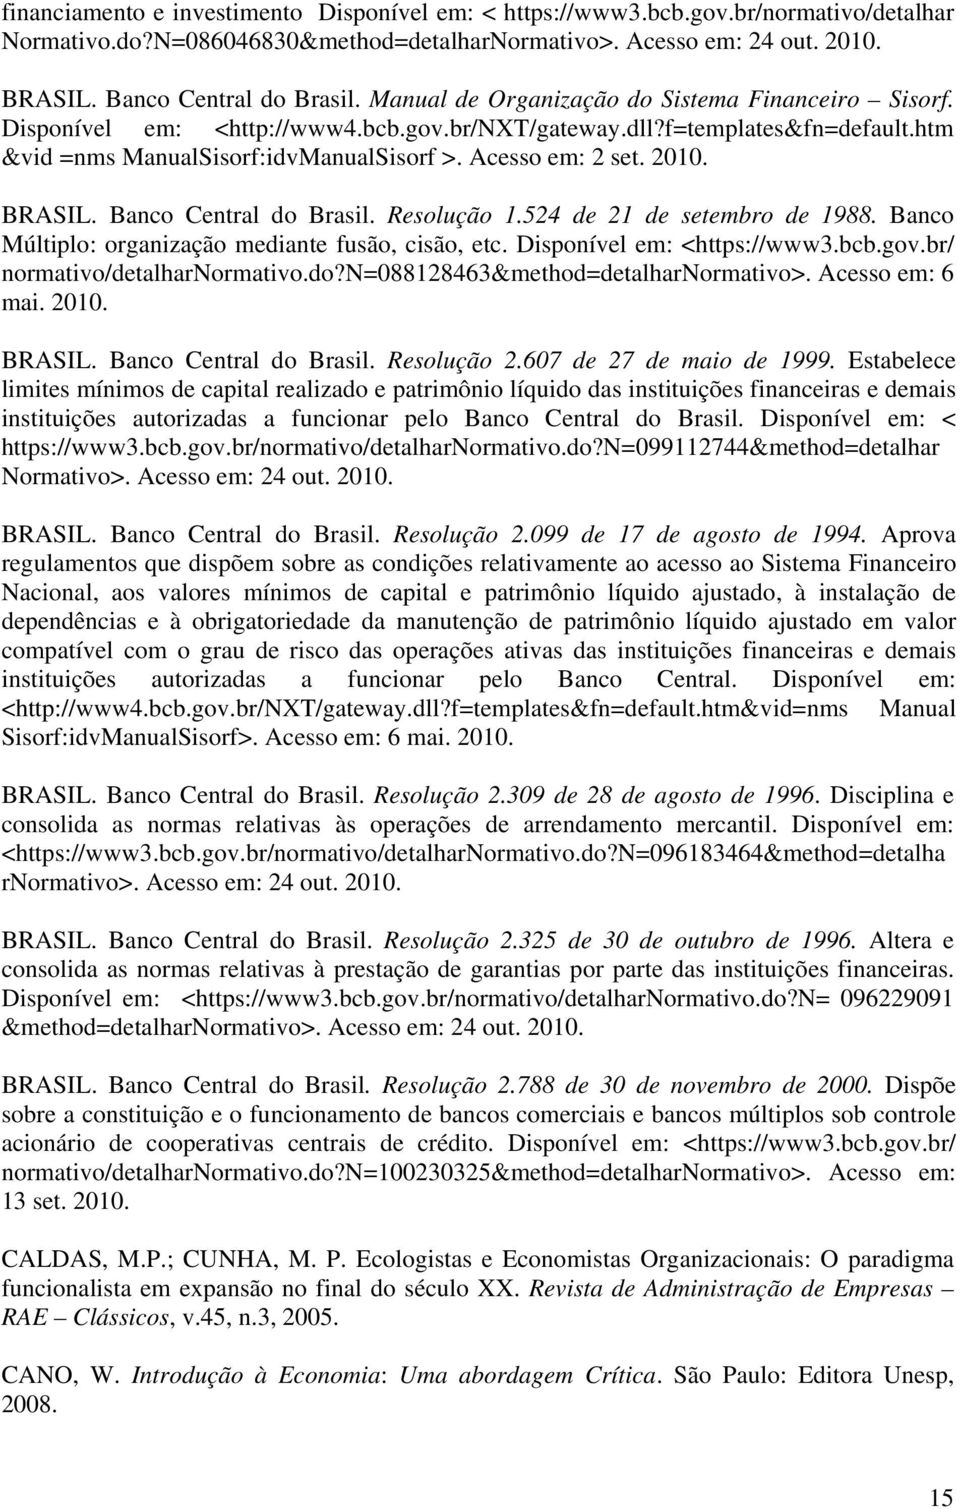 BRASIL. Banco Central do Brasil. Resolução 1.524 de 21 de setembro de 1988. Banco Múltiplo: organização mediante fusão, cisão, etc. Disponível em: <https://www3.bcb.gov.